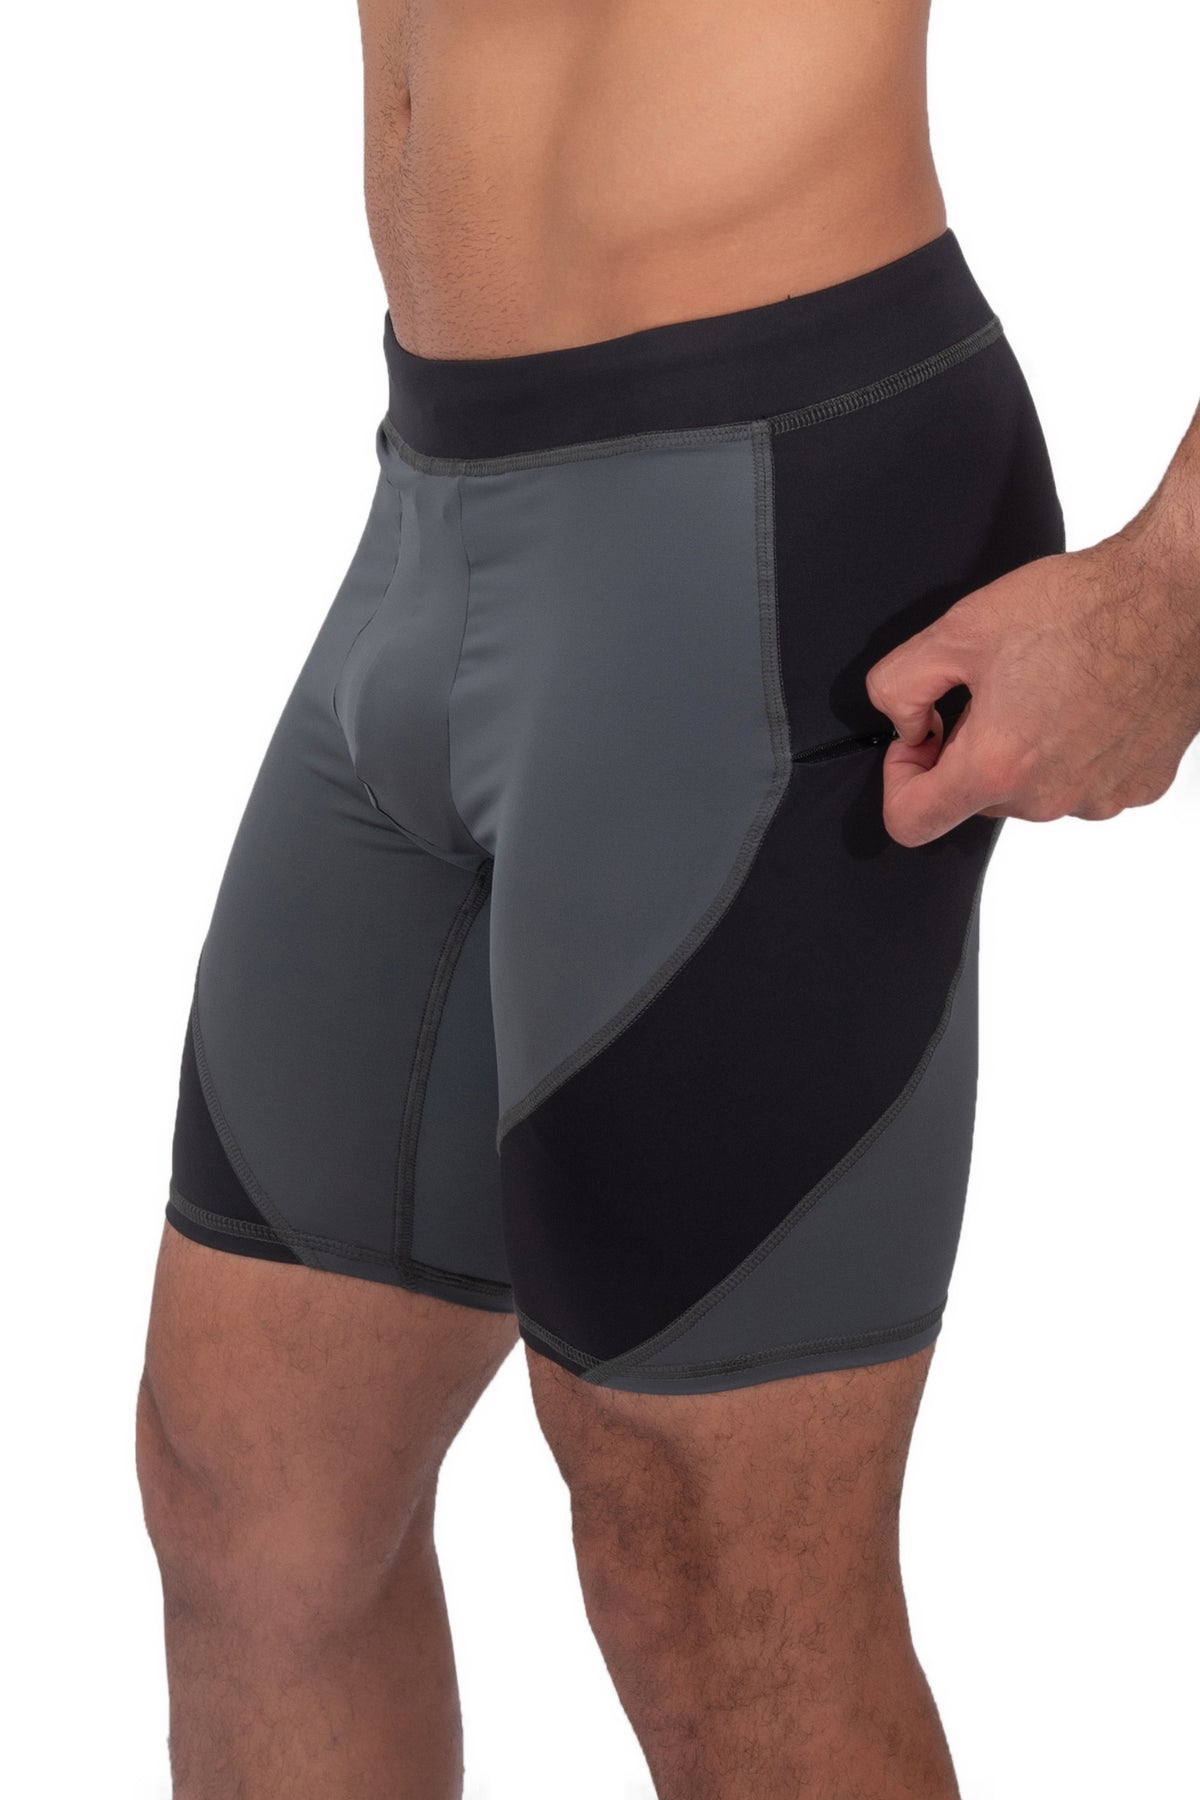 Men's Gray/Black Compression Shorts | Matador Meggings